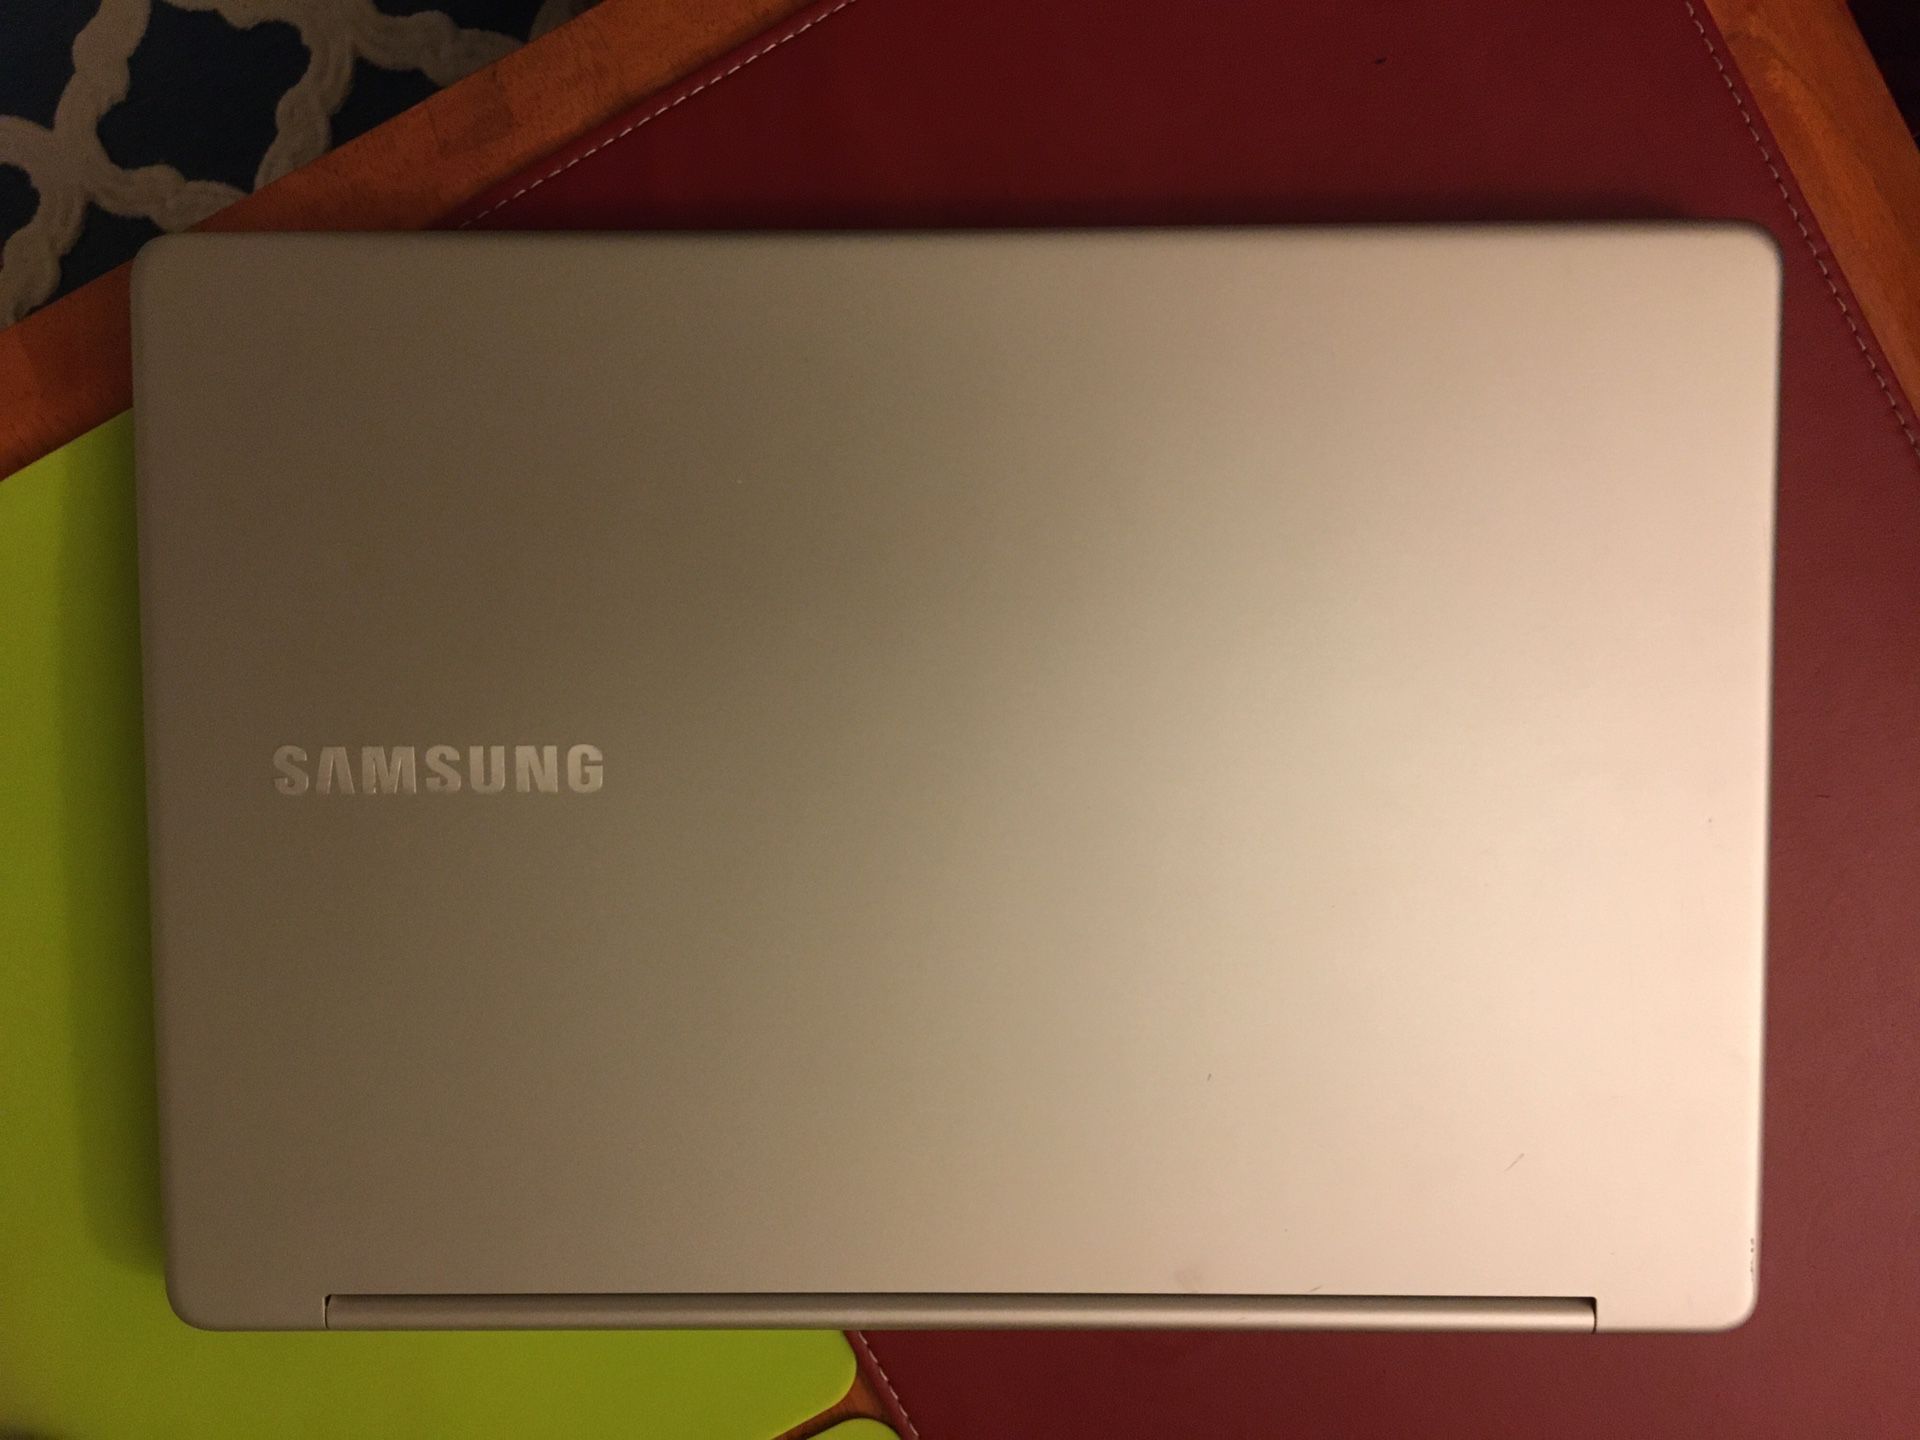 Samsung Notebook 7 Spin Touchscreen Laptop 